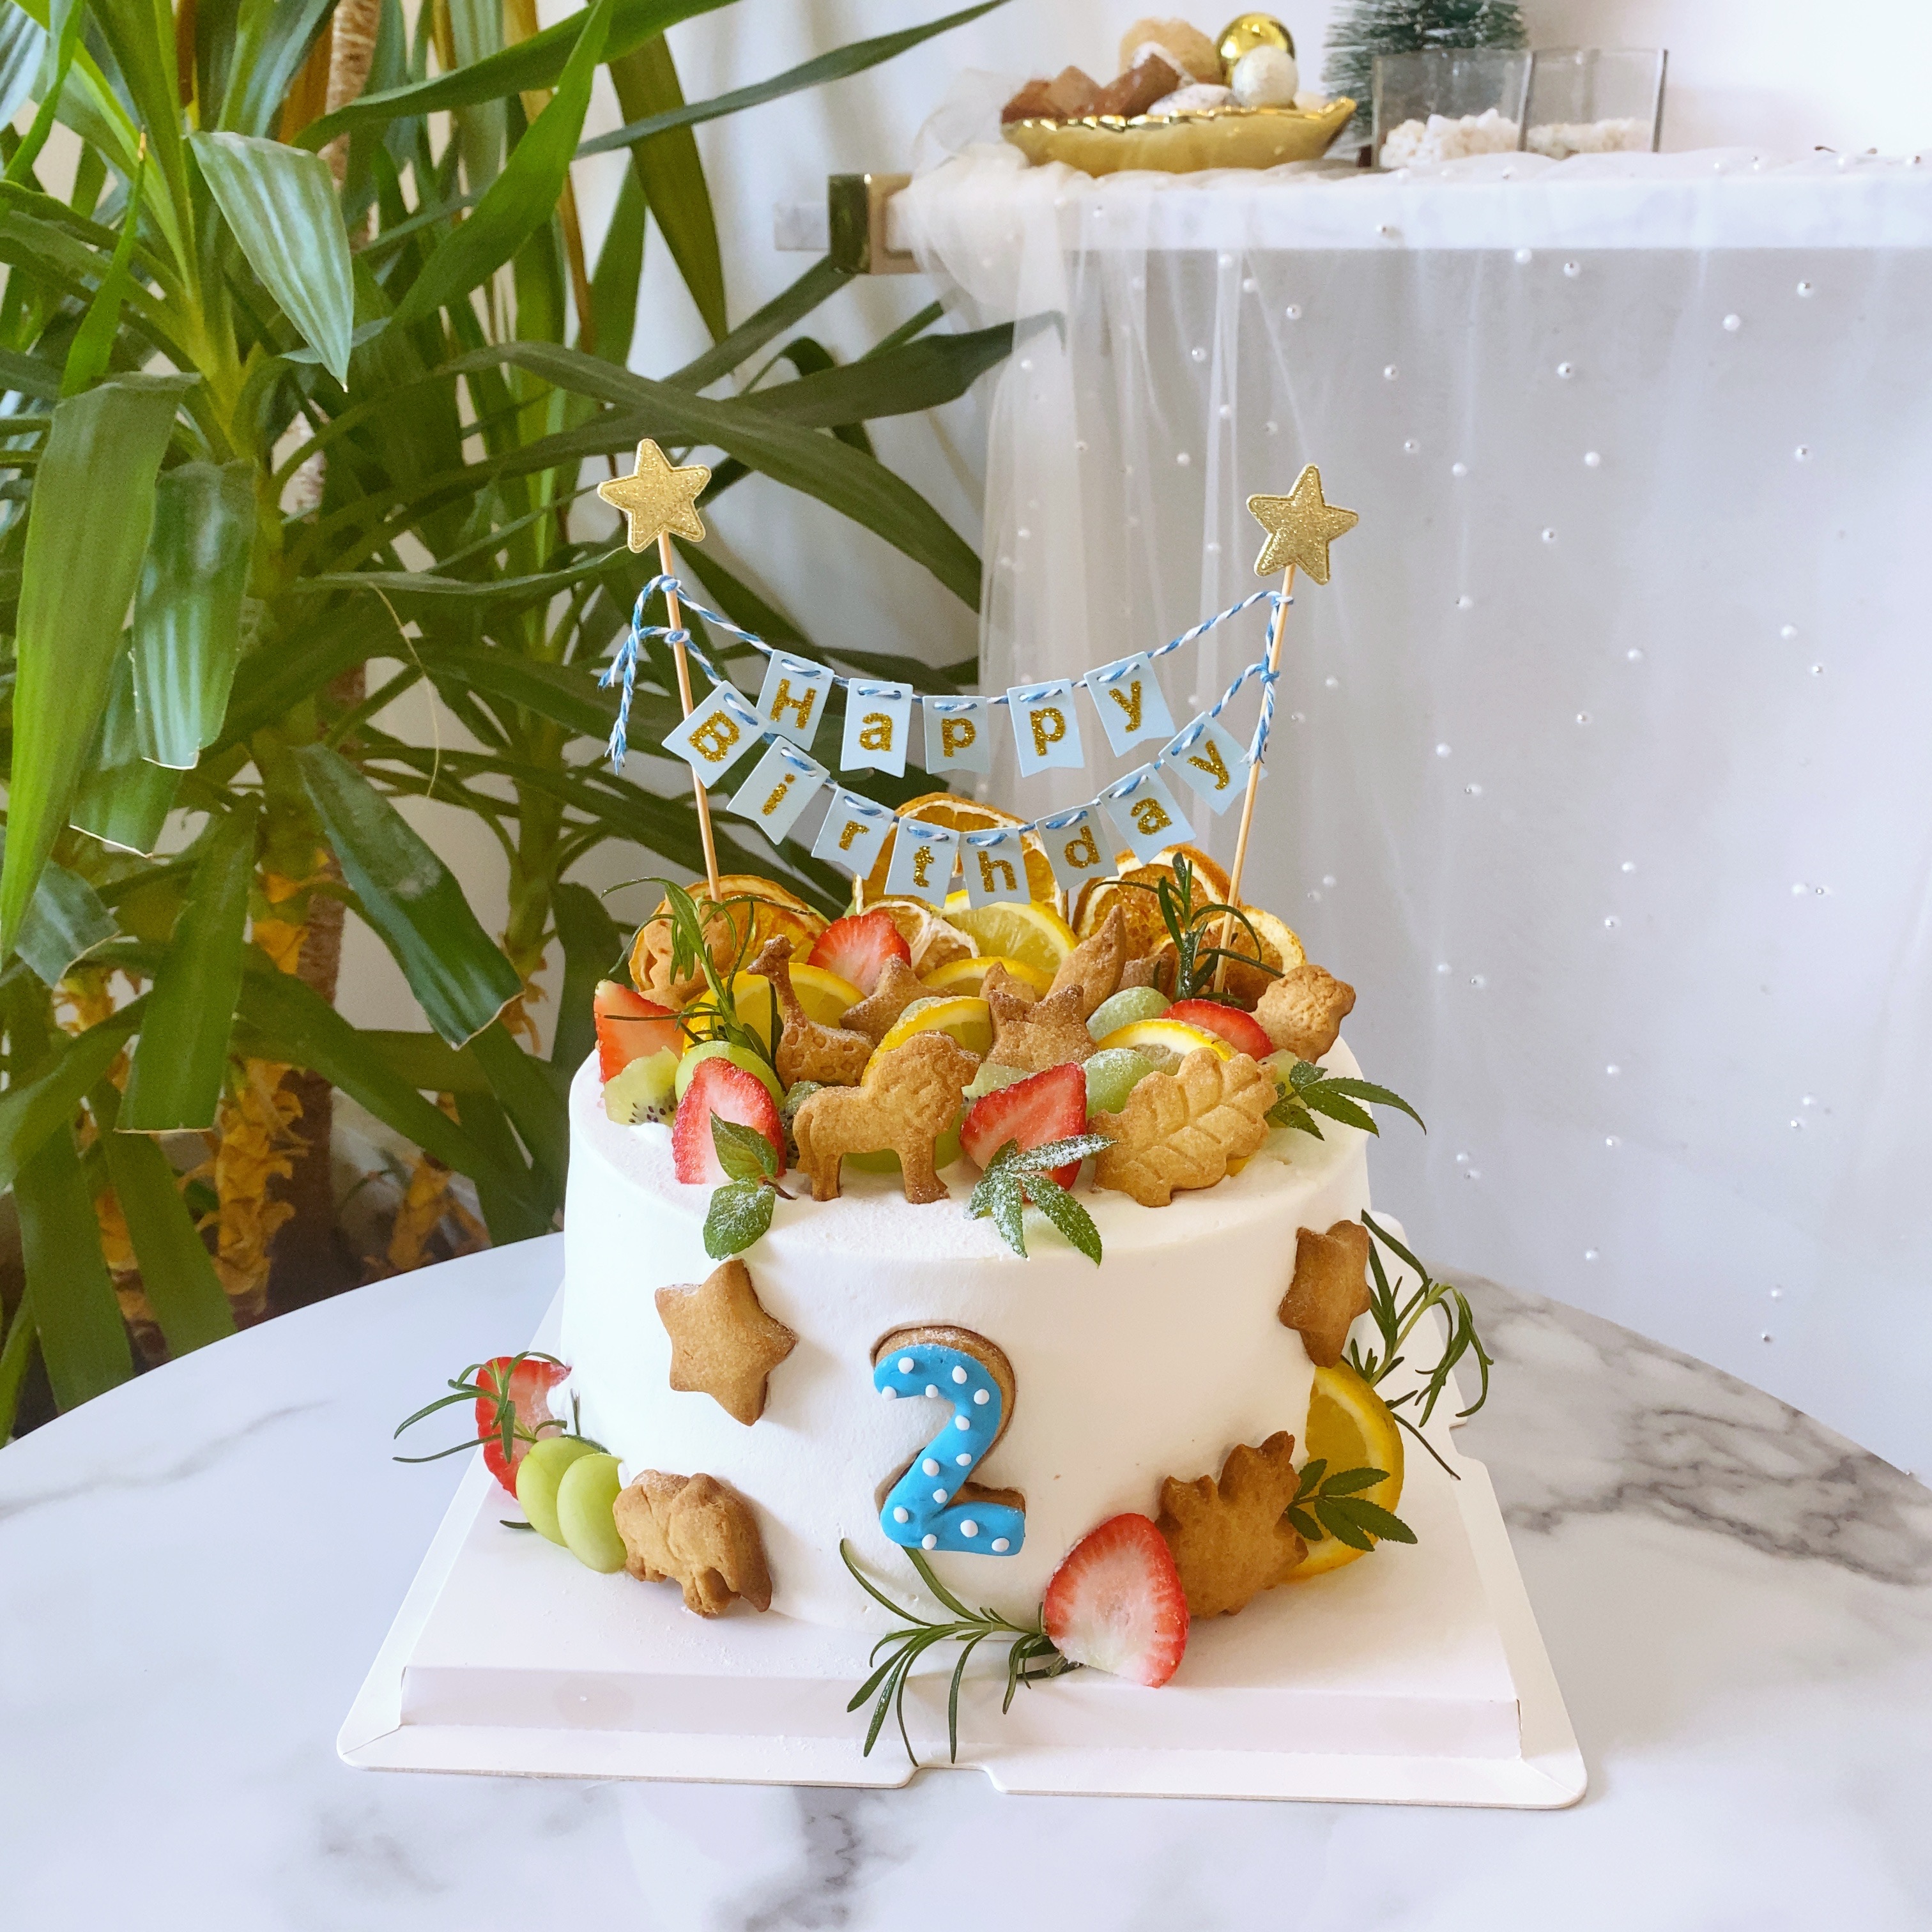 何雁诗囝囝半岁宴豪包高级餐厅 订三层蛋糕场地变森林媲美婚礼 | 星岛日报